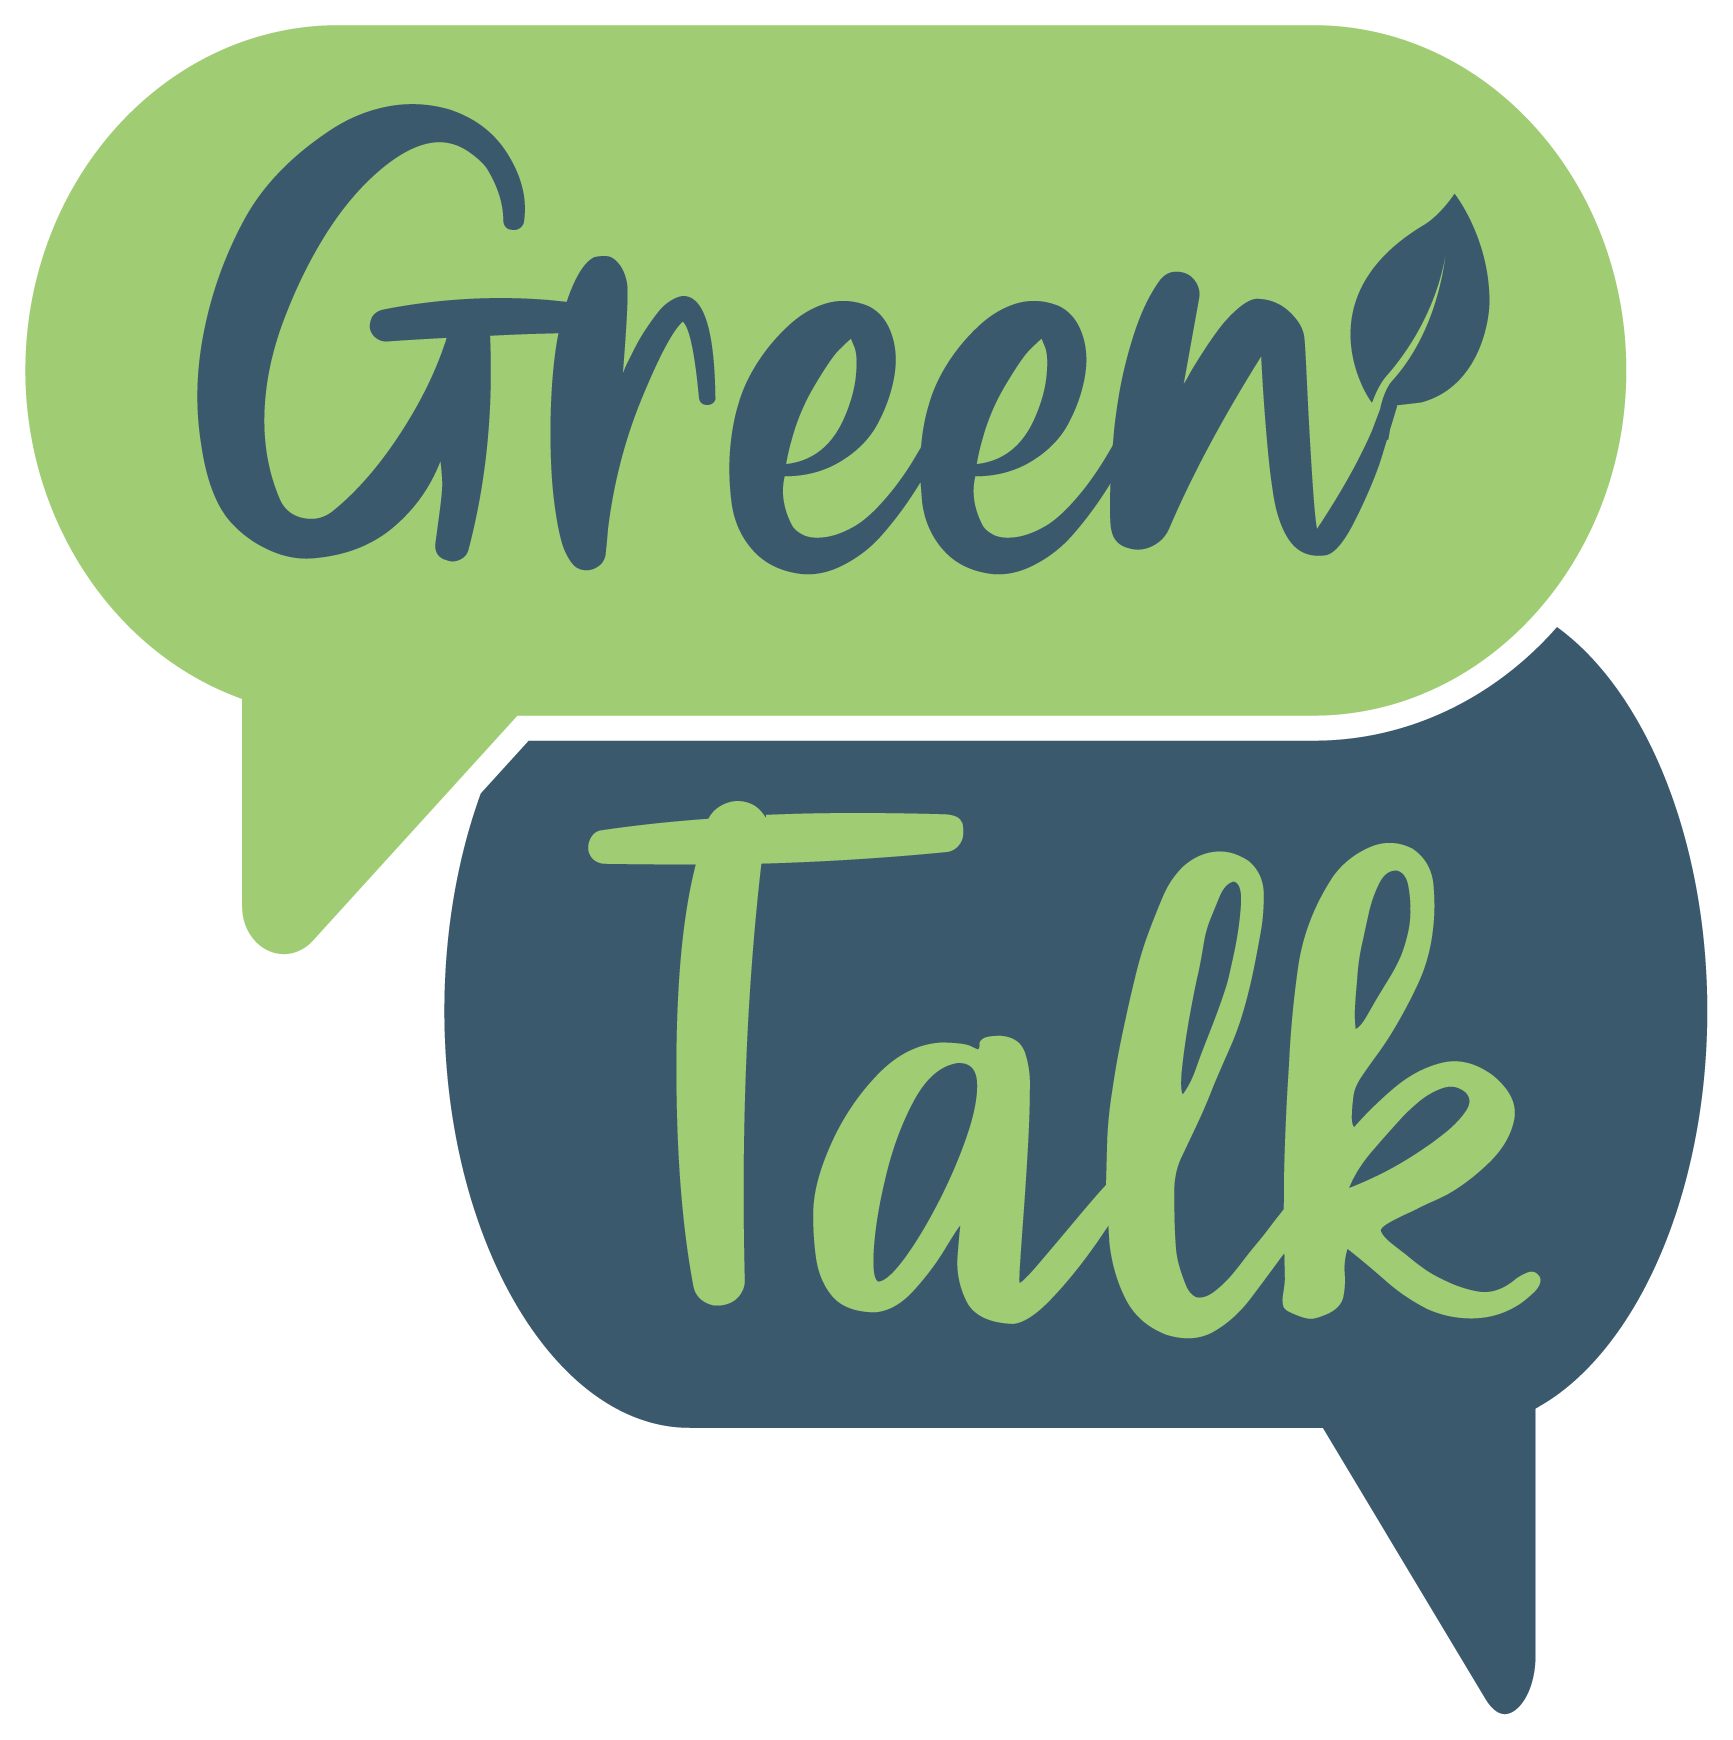 Green Talk